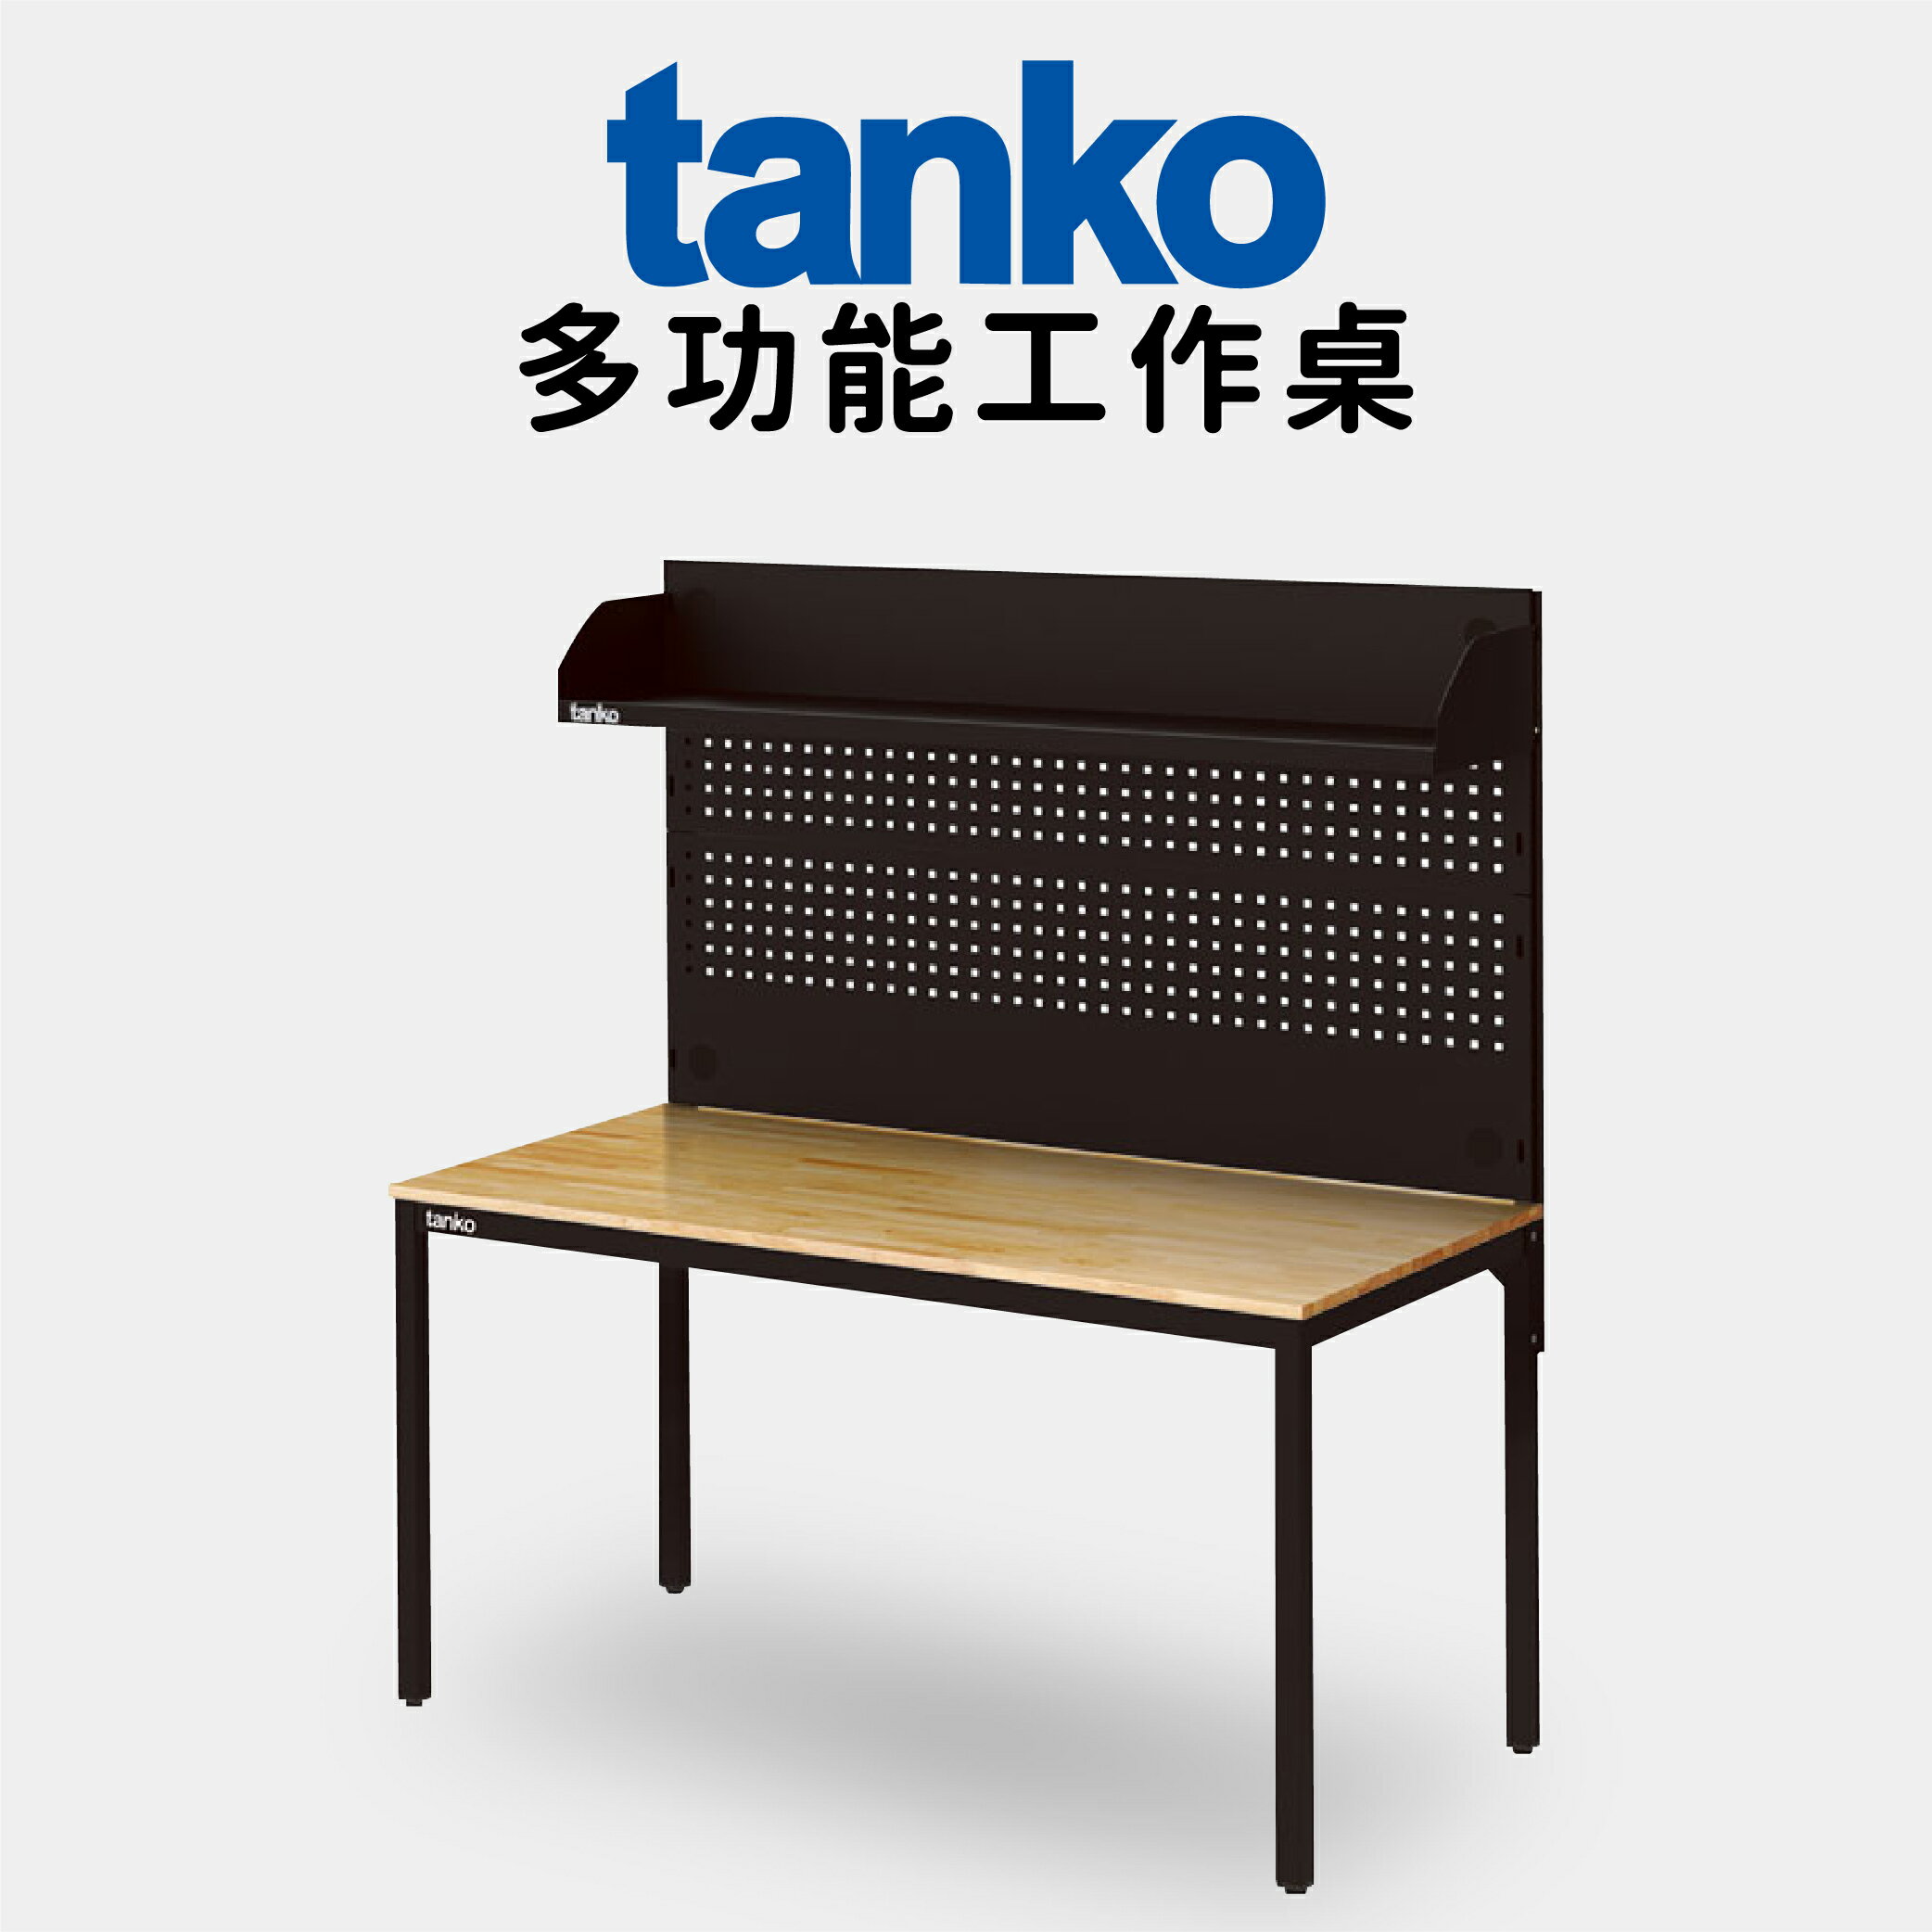 【天鋼 tanko】多功能工作桌 【WE-58W4】電腦桌 書桌 多用途桌 工廠專用